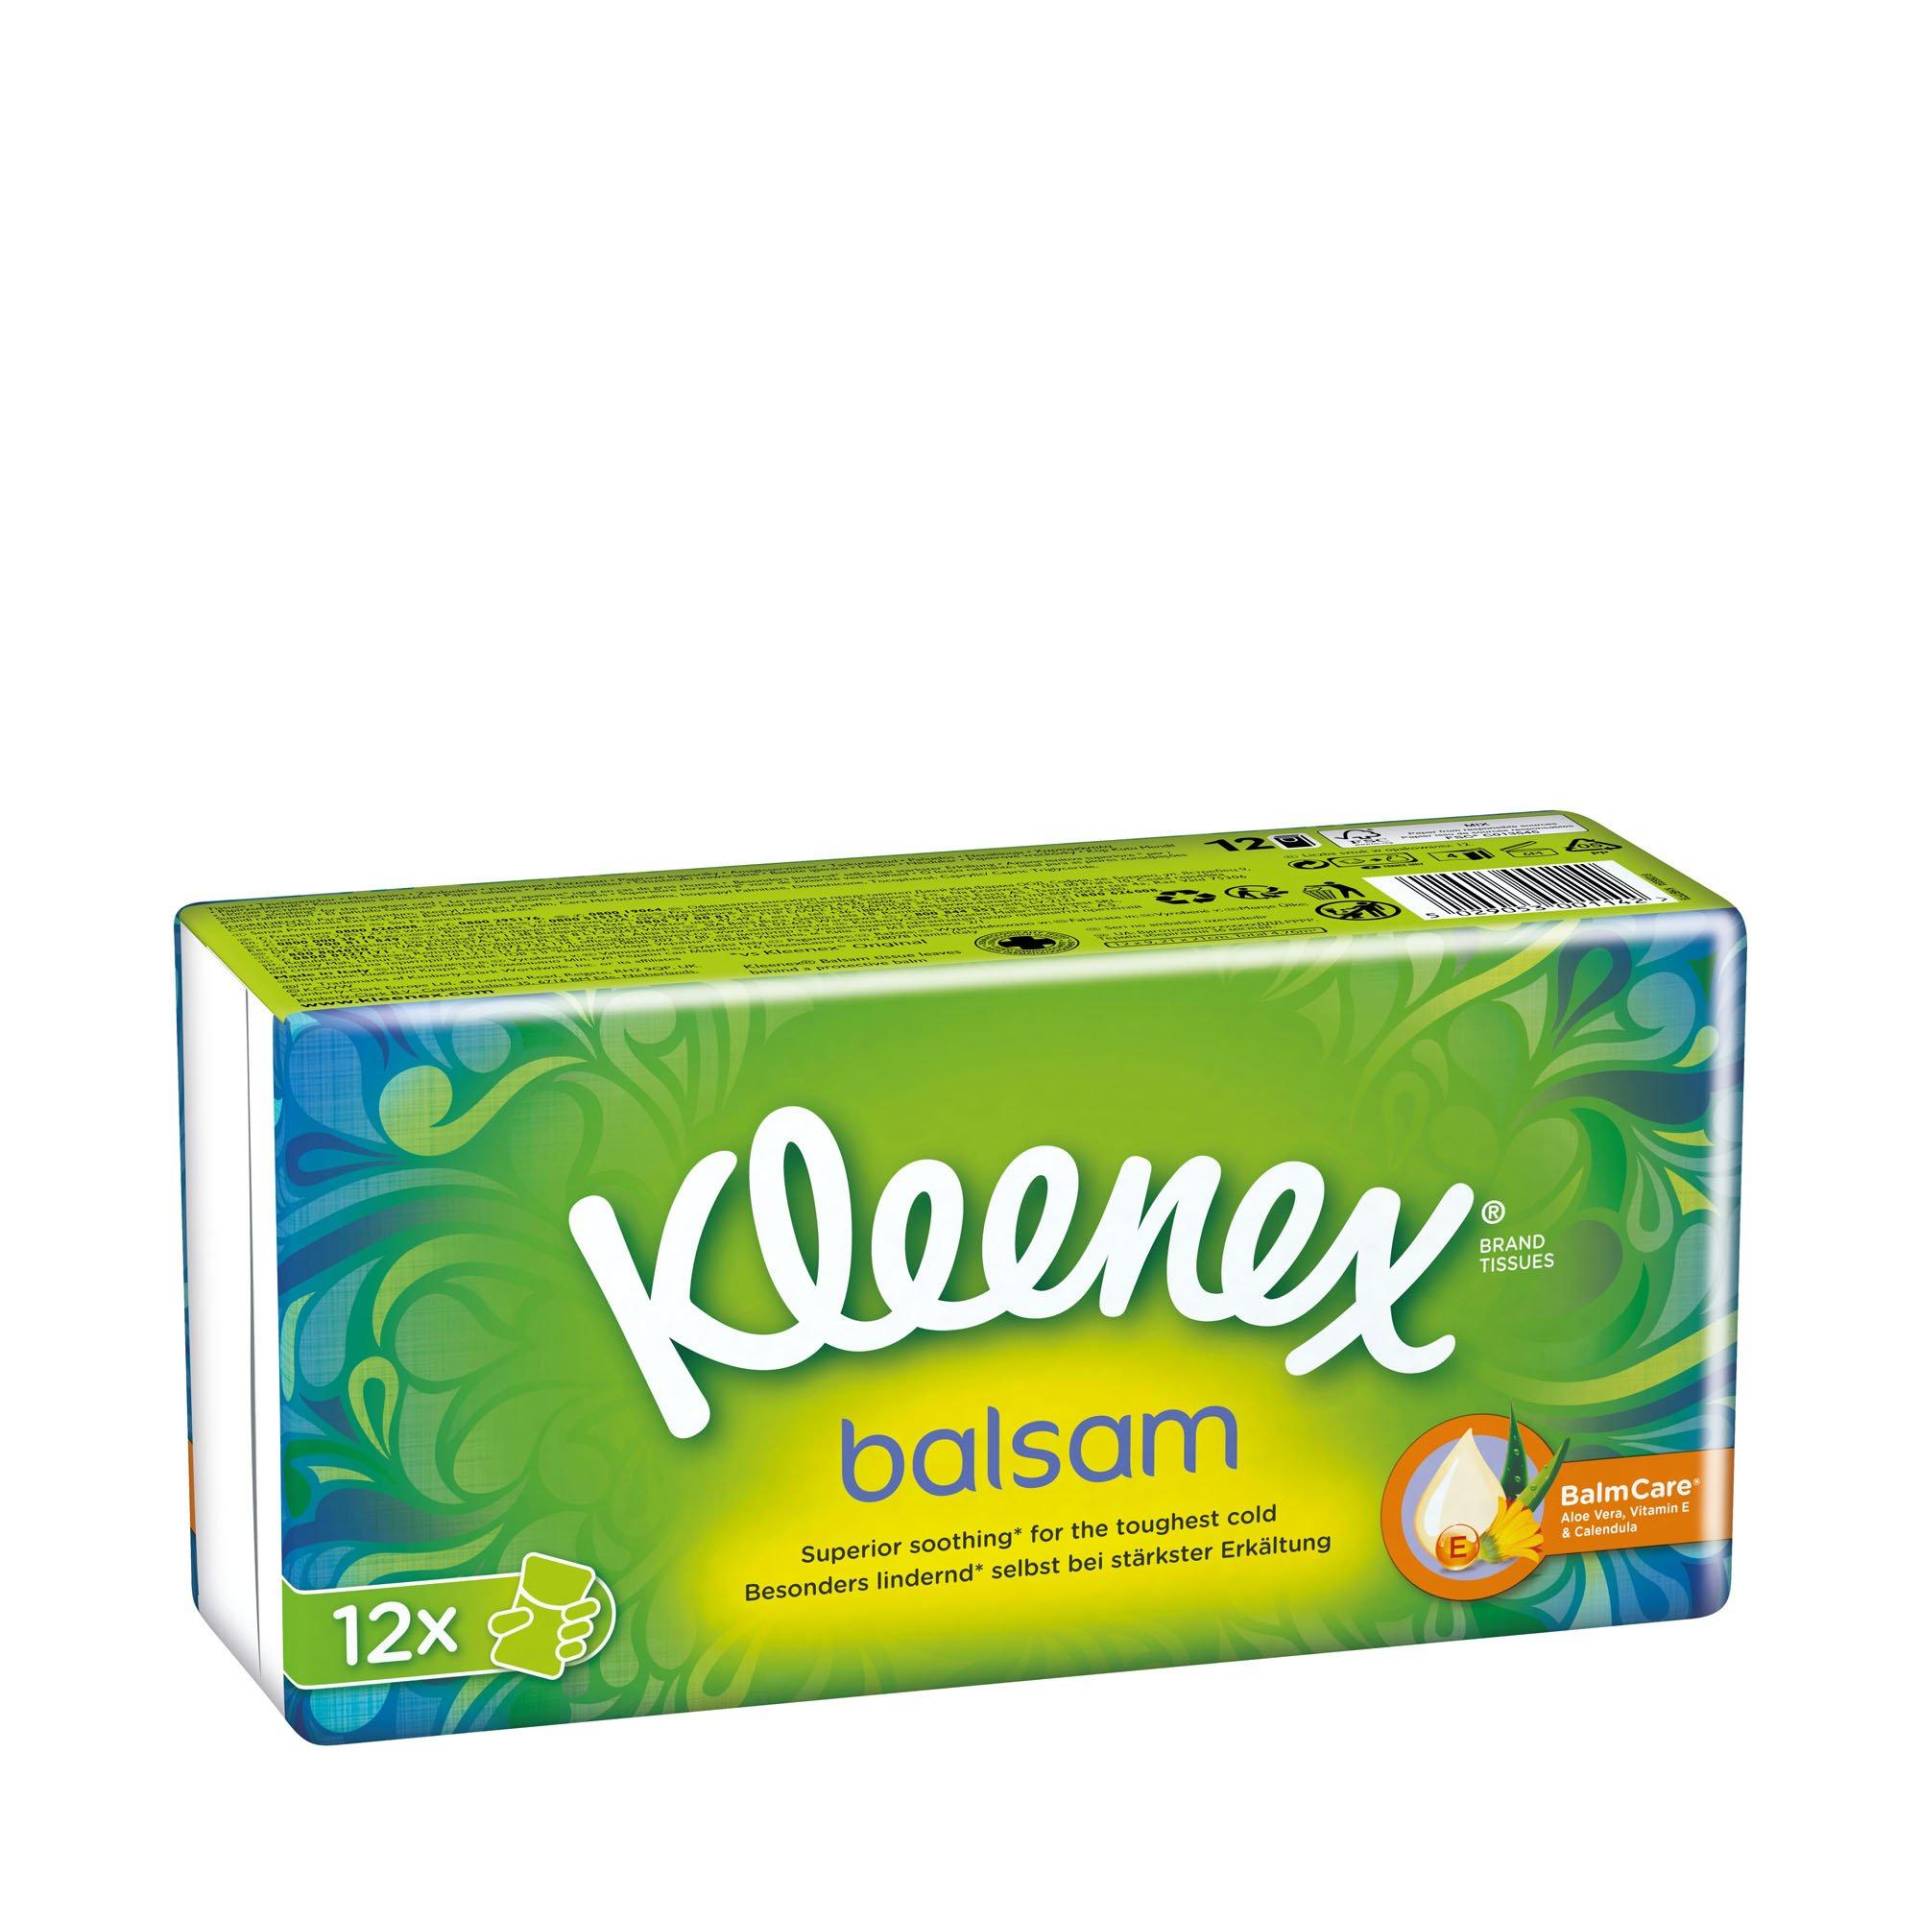 Balsam Taschentücher Damen  12X9STK von Kleenex